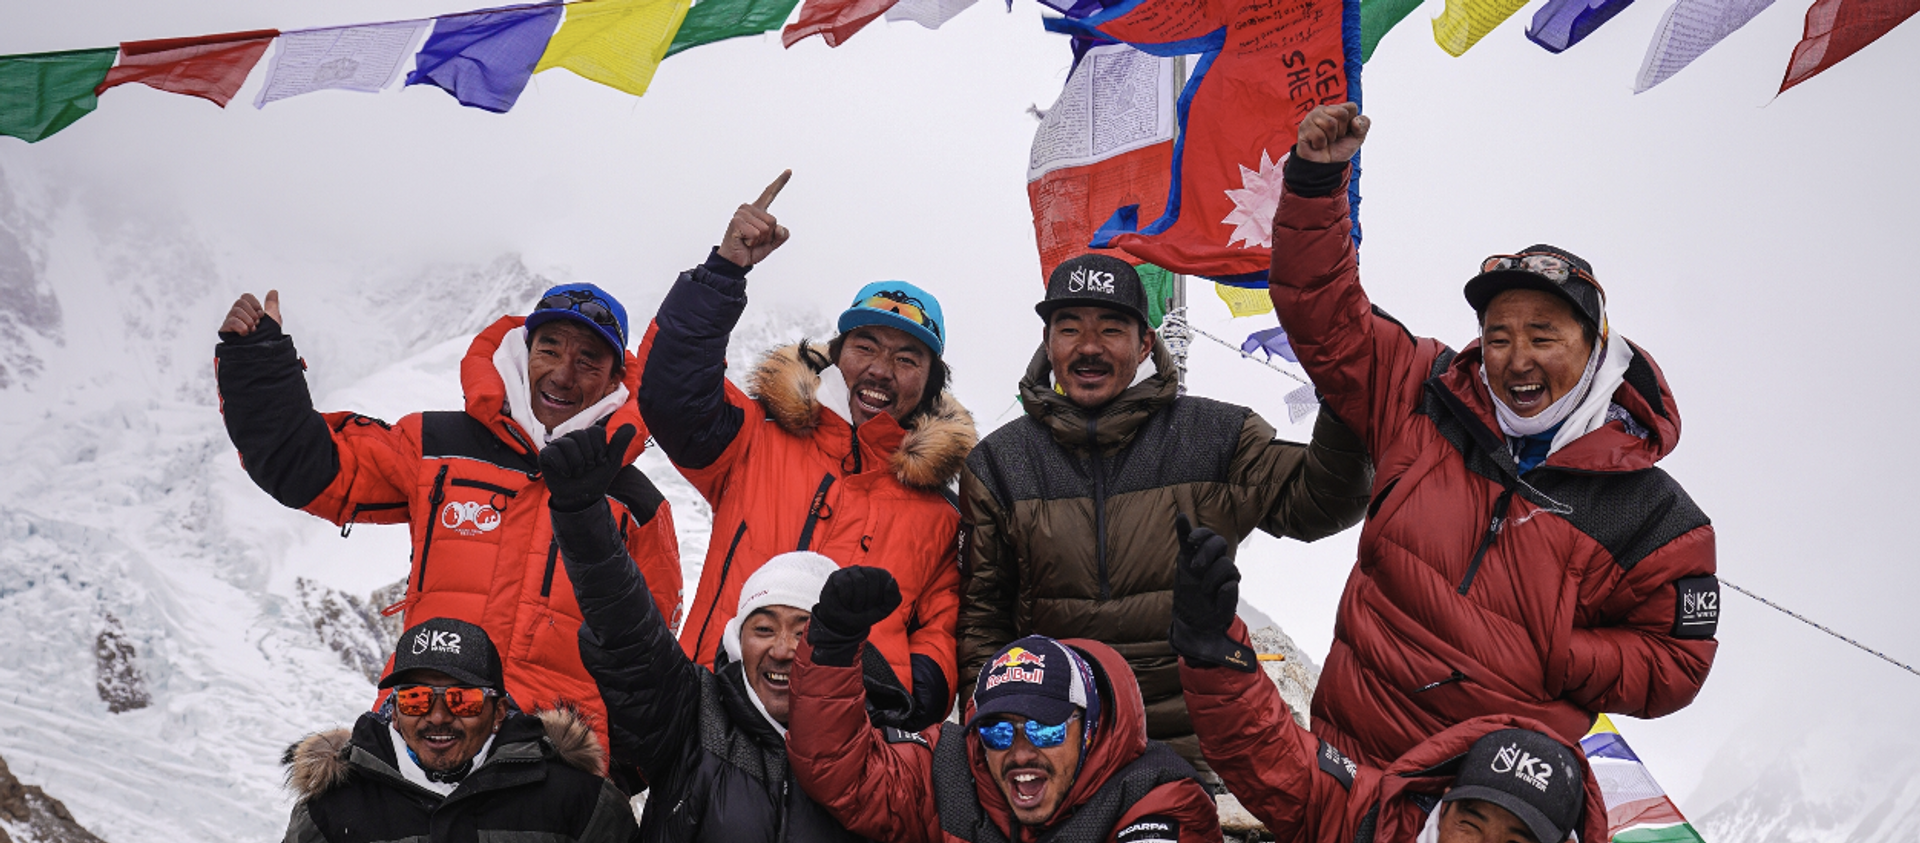 Dünyanın Everest’ten sonra en yüksek noktası olan K2 dağının zirvesine kış mevsiminde ulaşan Nepalli dağcılar, bir ilke imza attı - Sputnik Türkiye, 1920, 17.01.2021